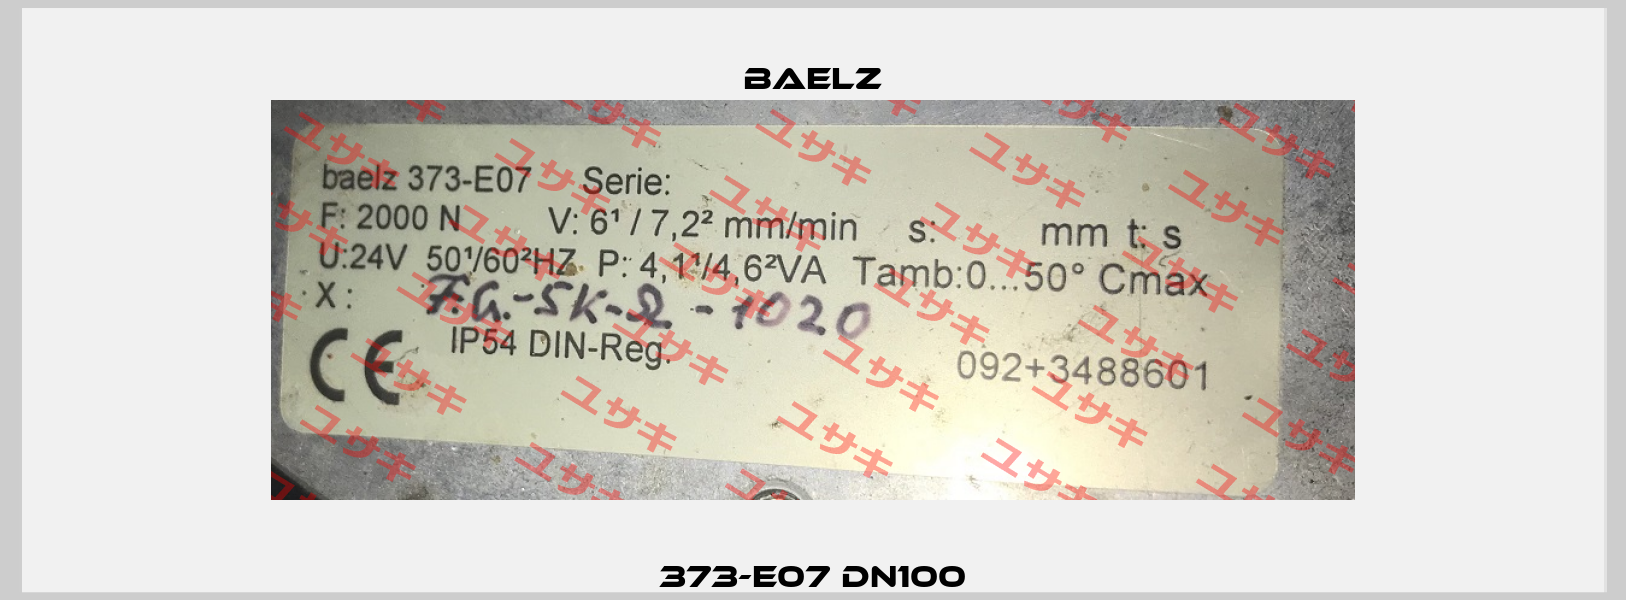 373-E07 DN100 Baelz